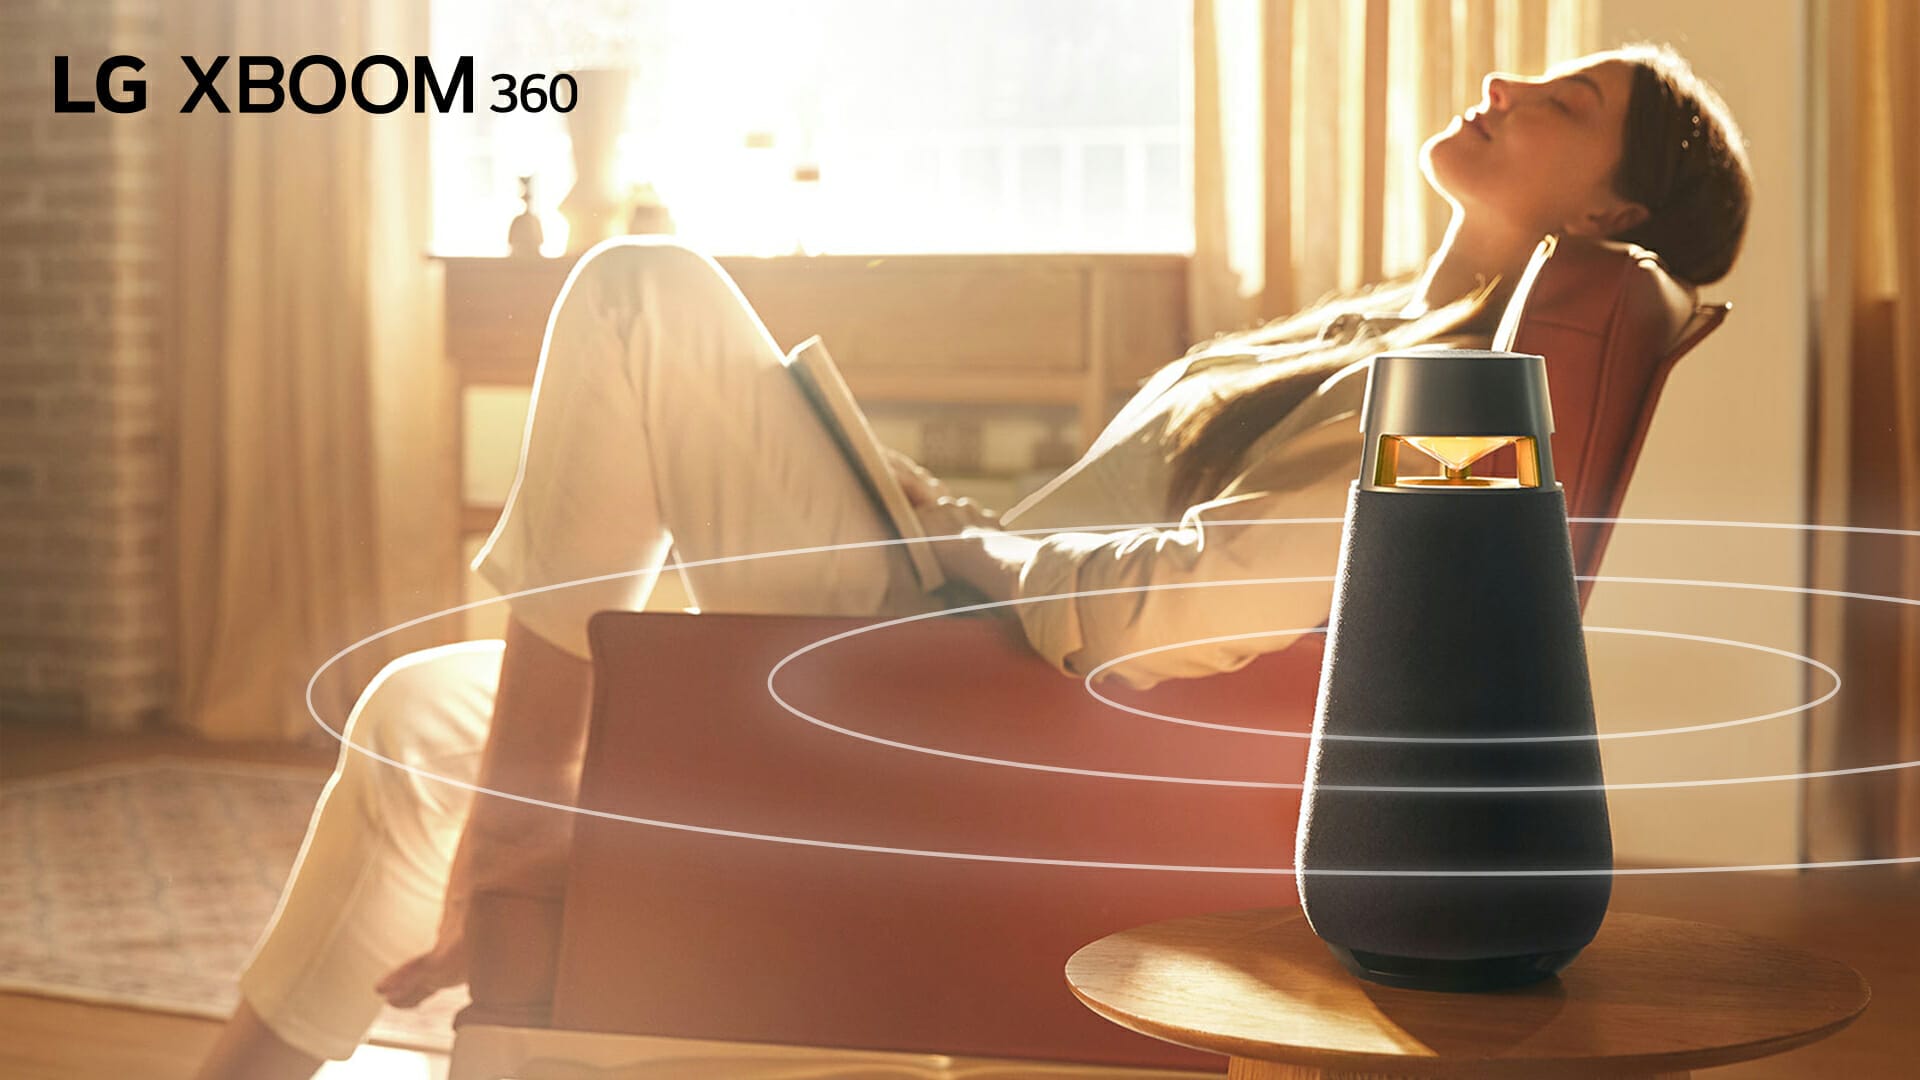 เปิดตัว LG XBOOM360 รุ่น XO3Q ลำโพงบลูทูธแบบพกพา รับส่วนลดเพิ่ม 8% ผ่อน 0% สูงสุด 10 เดือน และแพ็กเกจ JOOX VIP ฟรี 6 เดือน